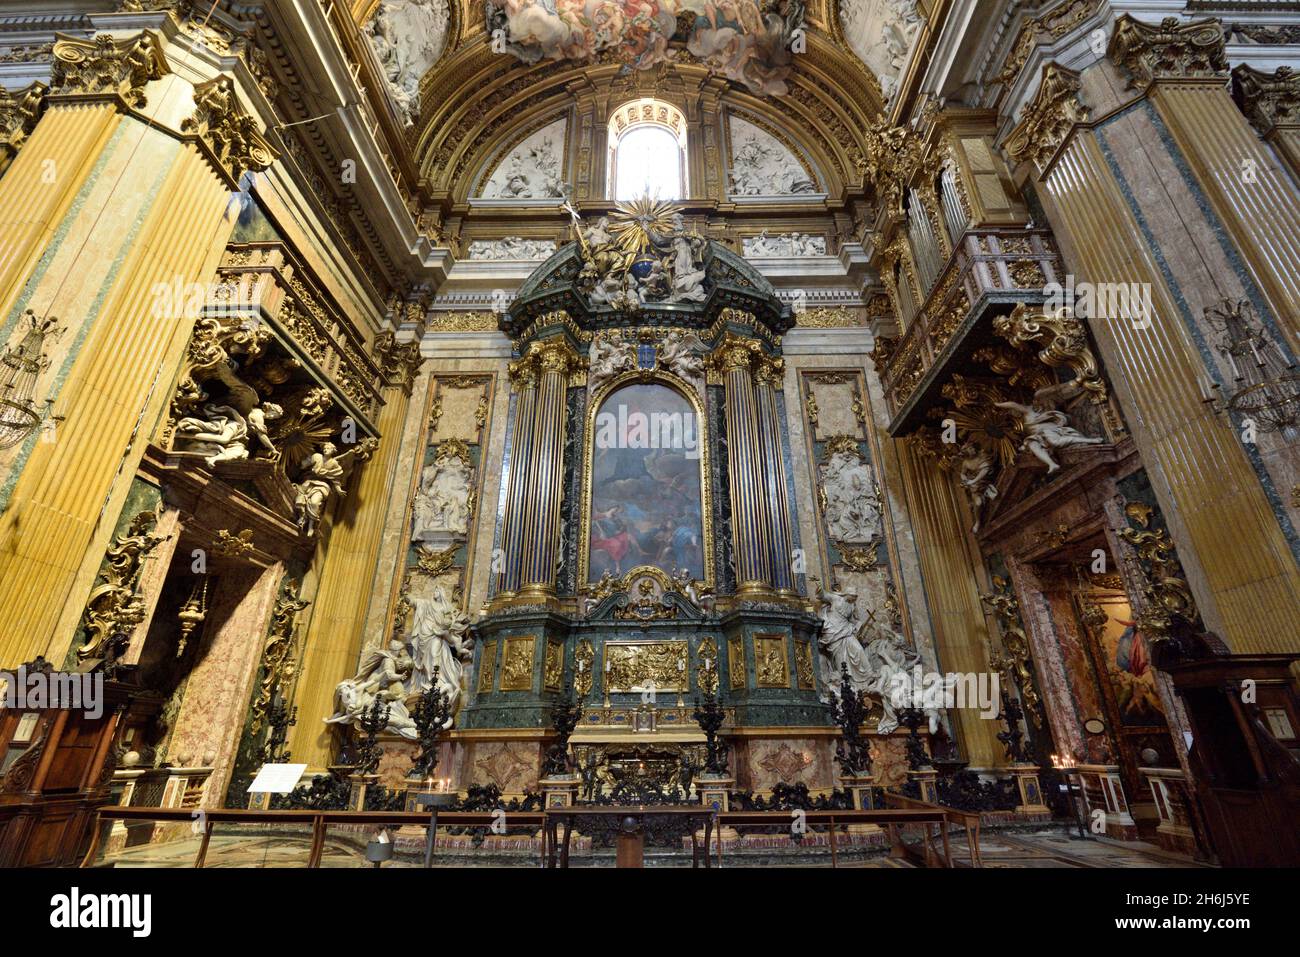 Italien, Rom, Chiesa del Gesù (Kirche Jesu), der Altar des hl. Ignatius und die barocke Maschine Stockfoto